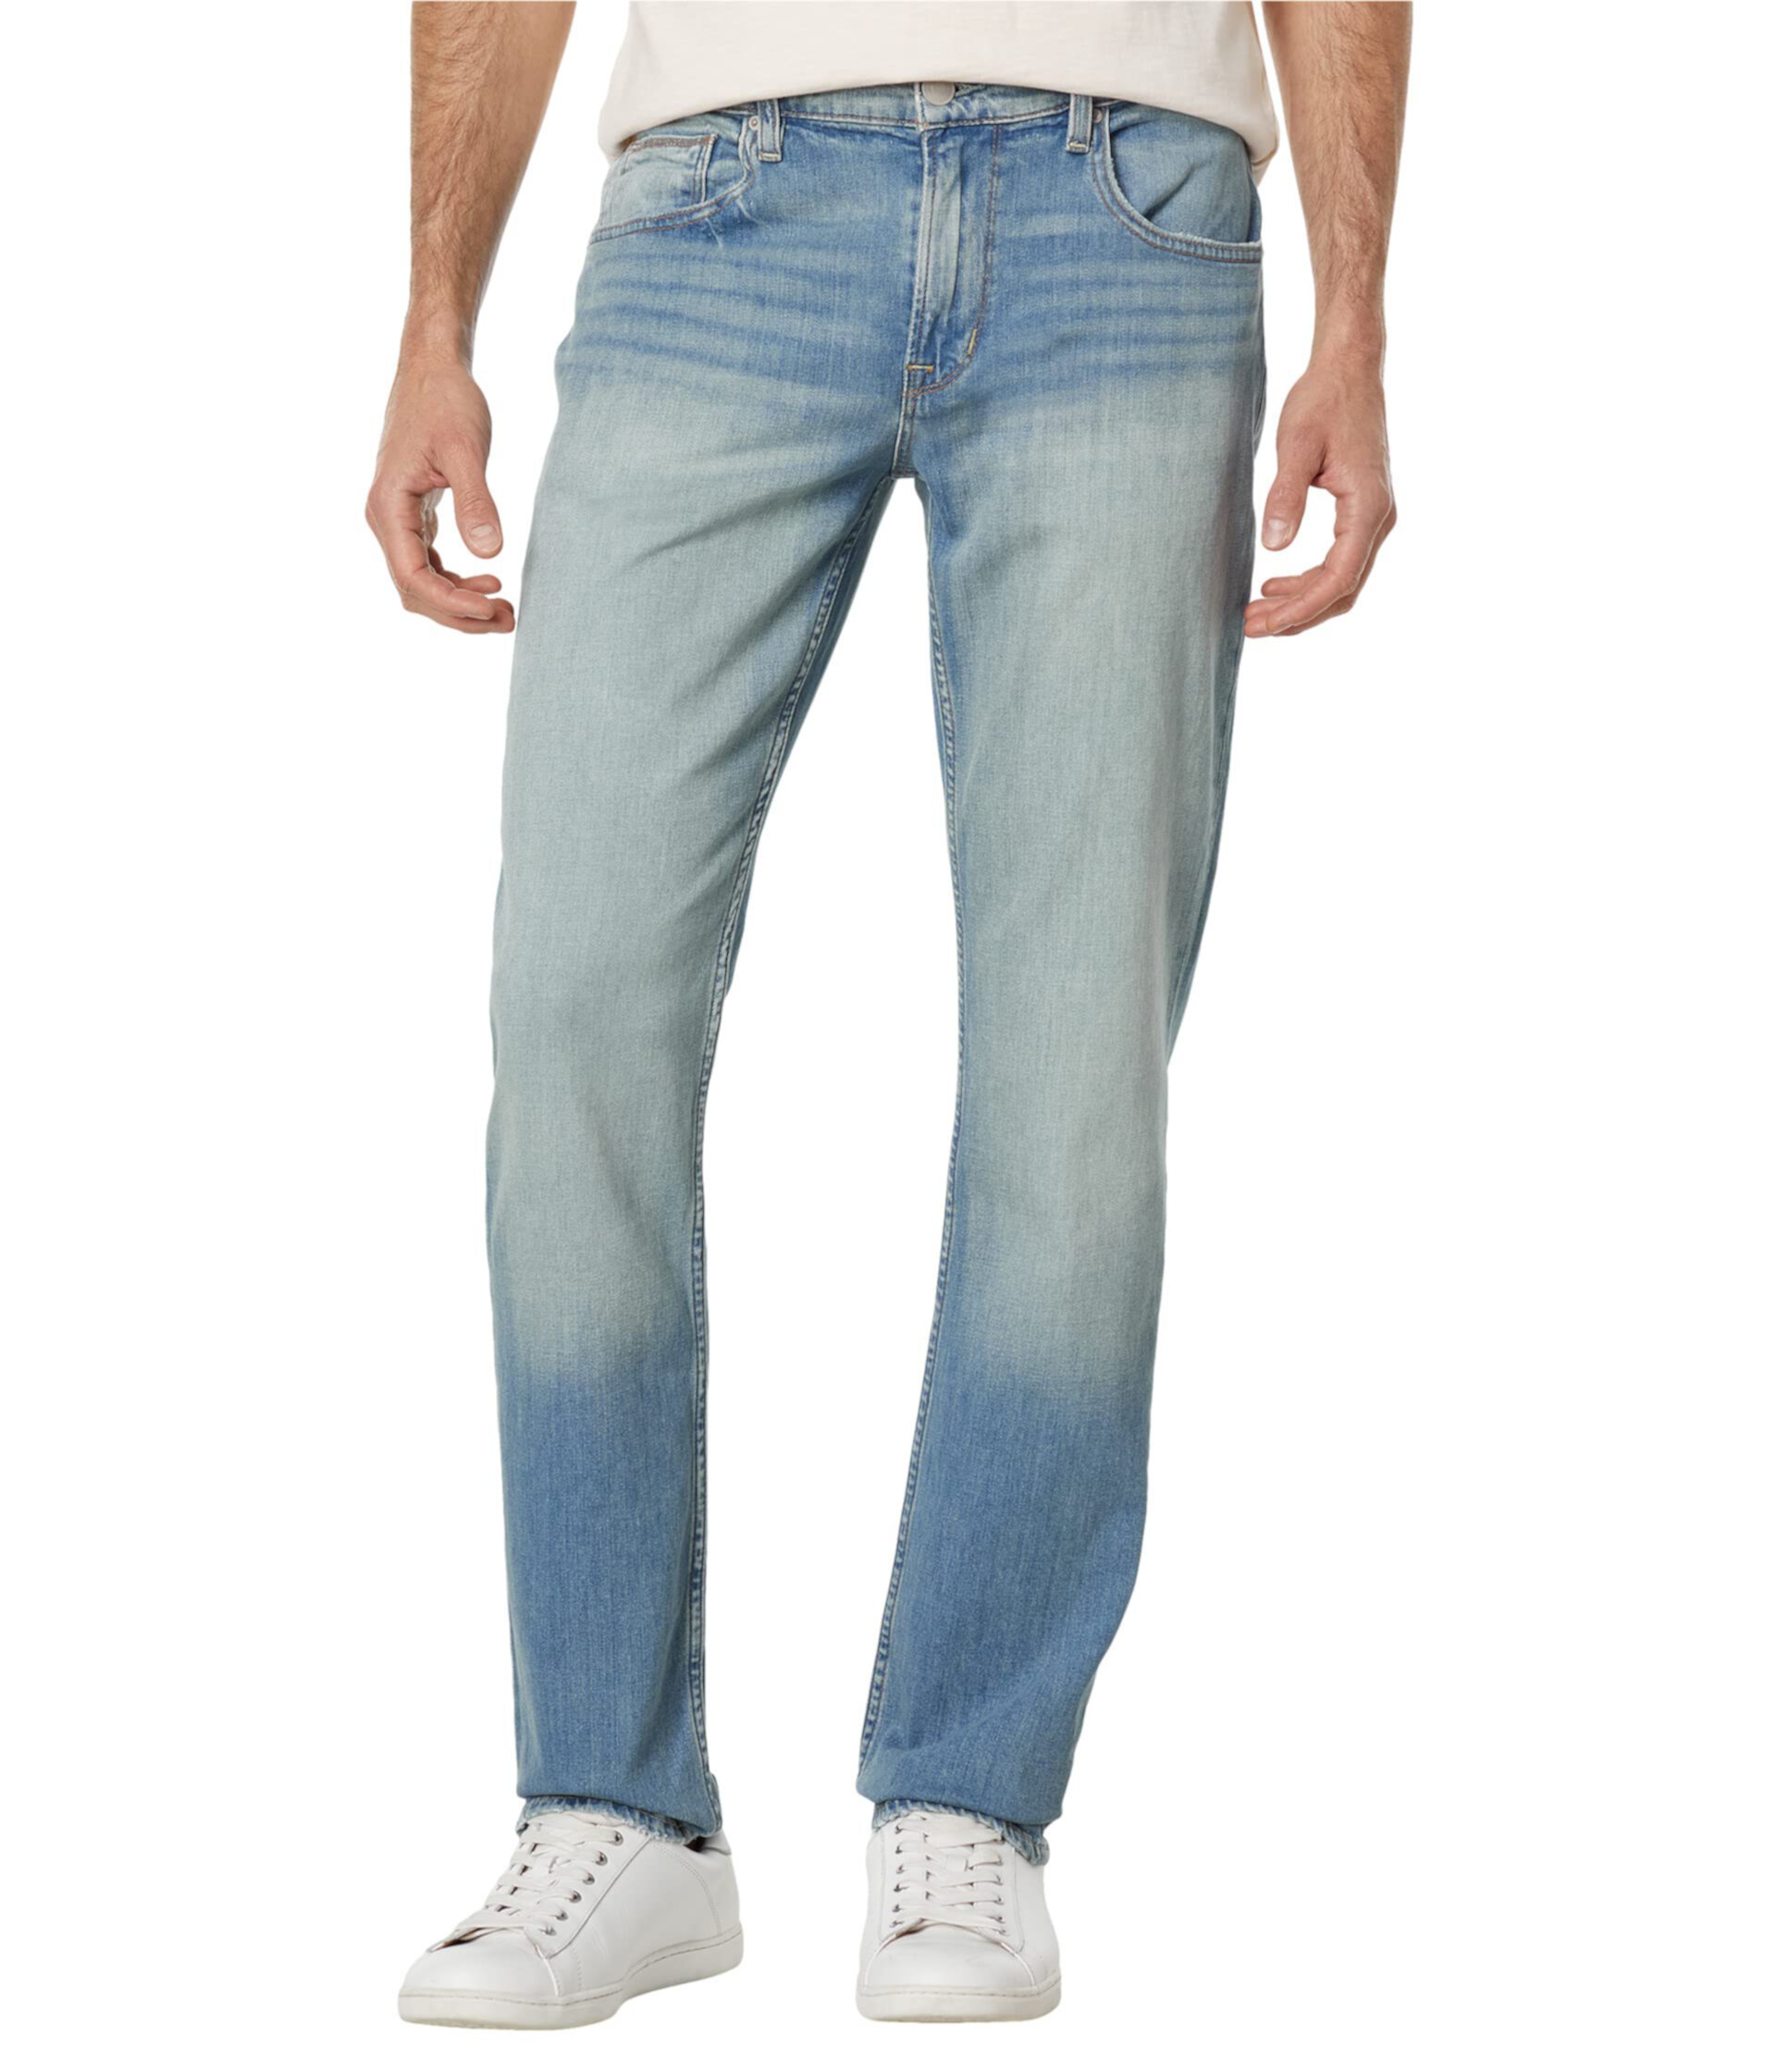 Узкие прямые джинсы Blake в цвете Control Hudson Jeans